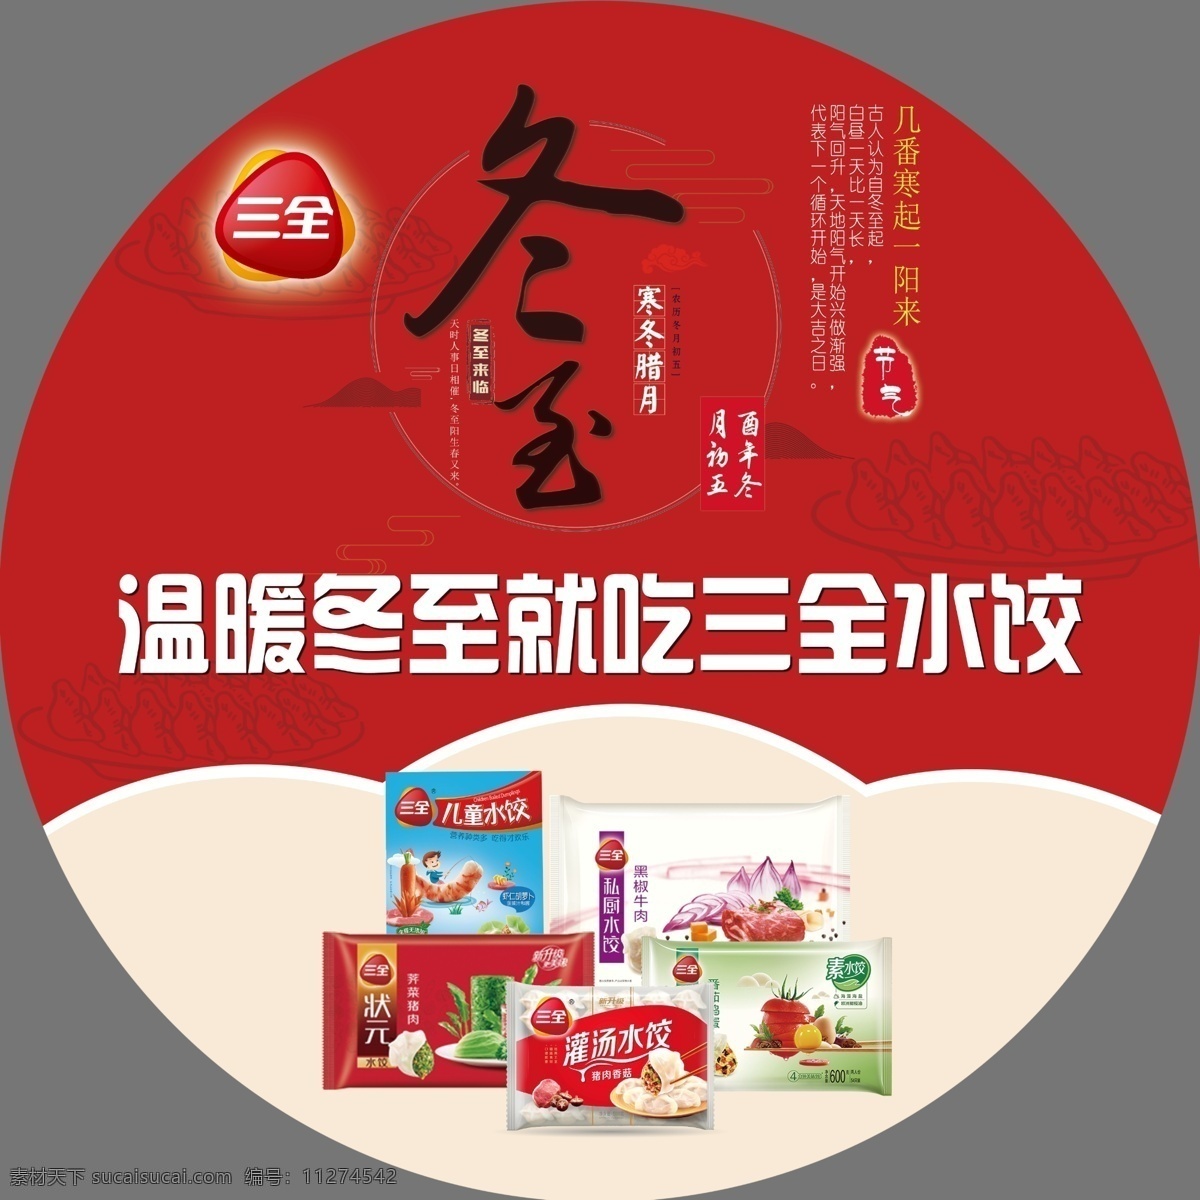 三全食品 冬至 三全 食品 水饺 超市 广告 宣传 生活百科 生活用品